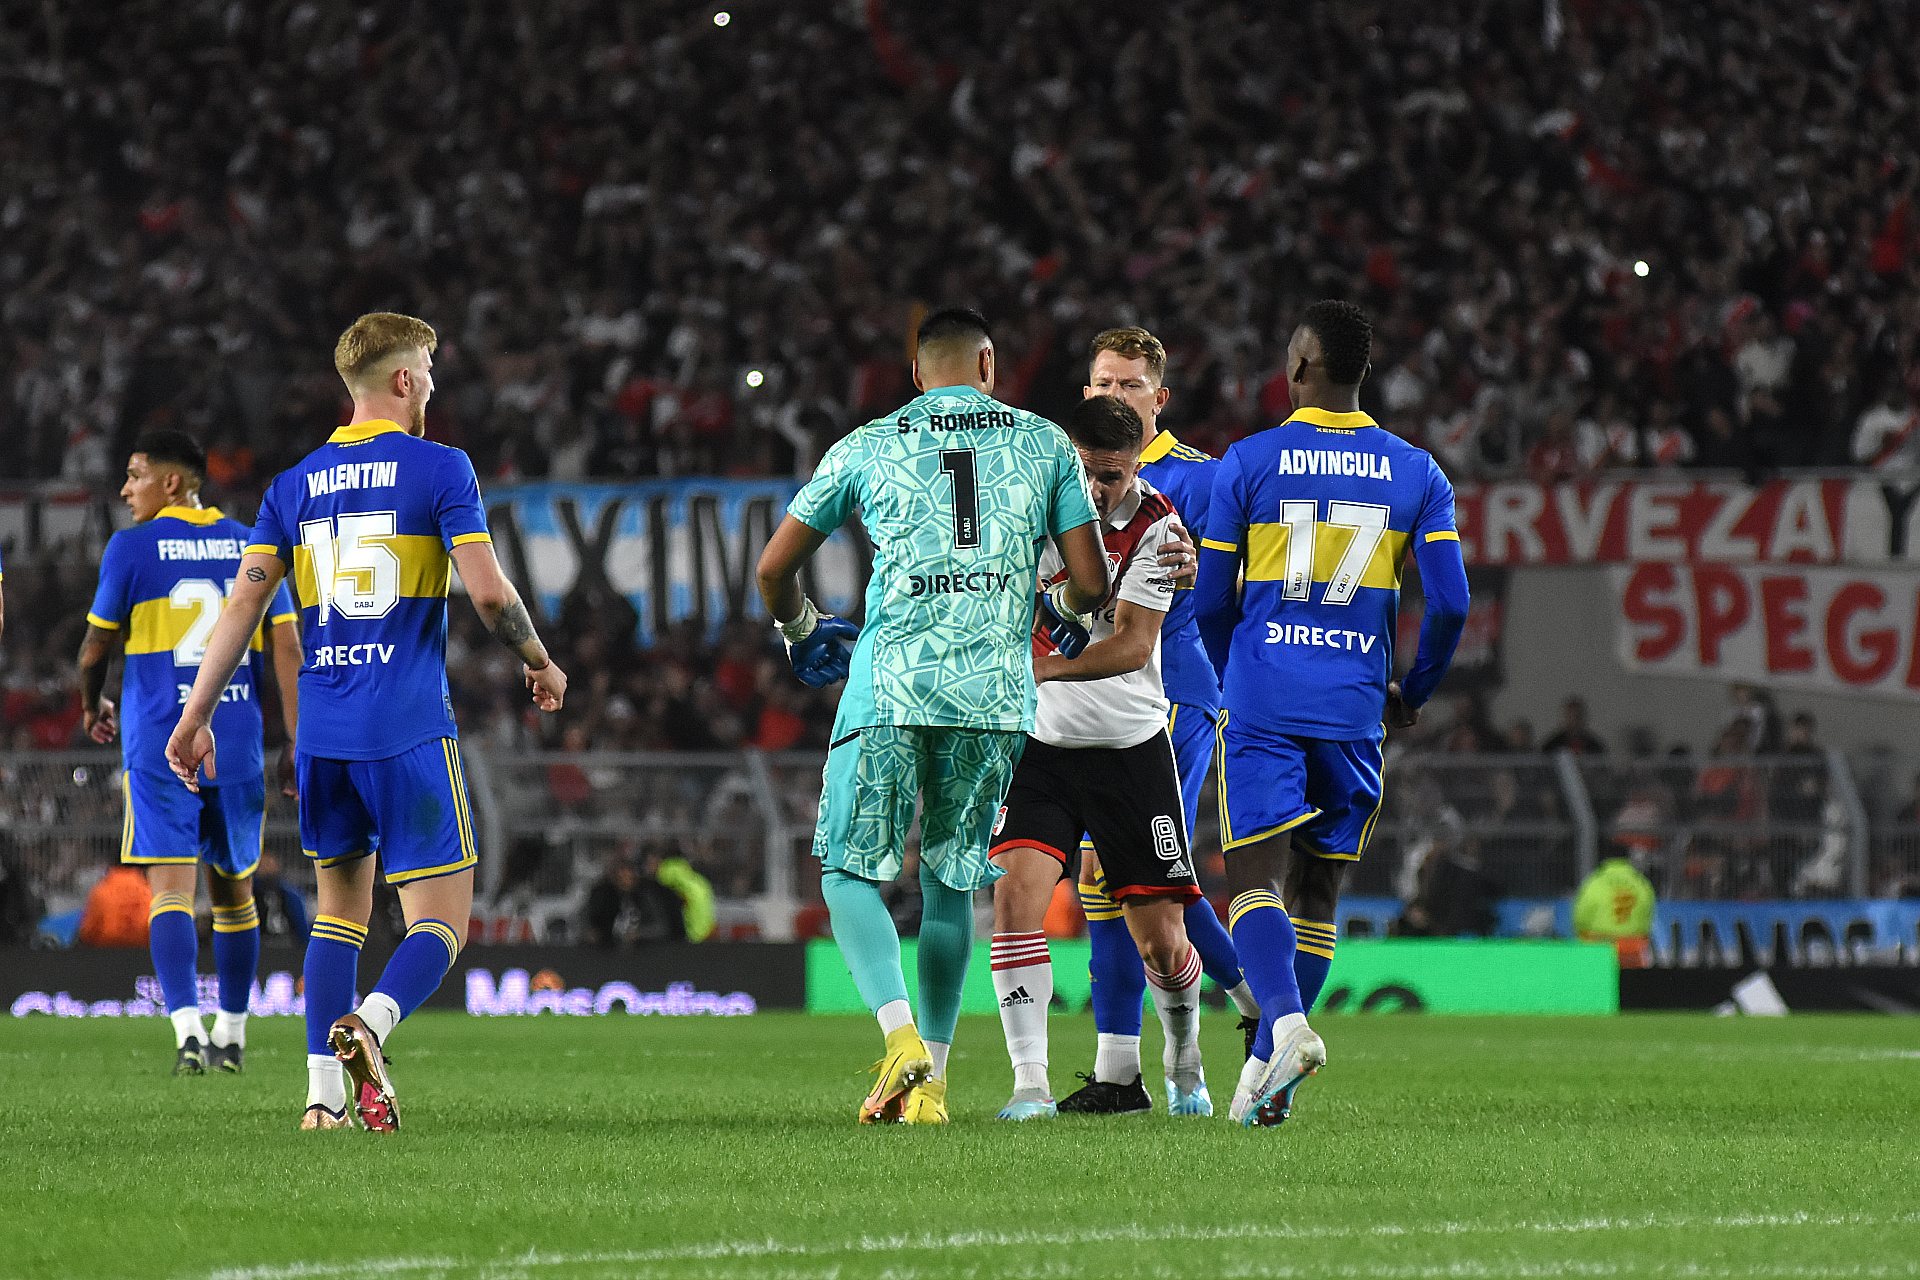 Chiquito Romero estalló de bronca por la actitud de Palavecino en el festejo de gol (Nicolás Stulberg)